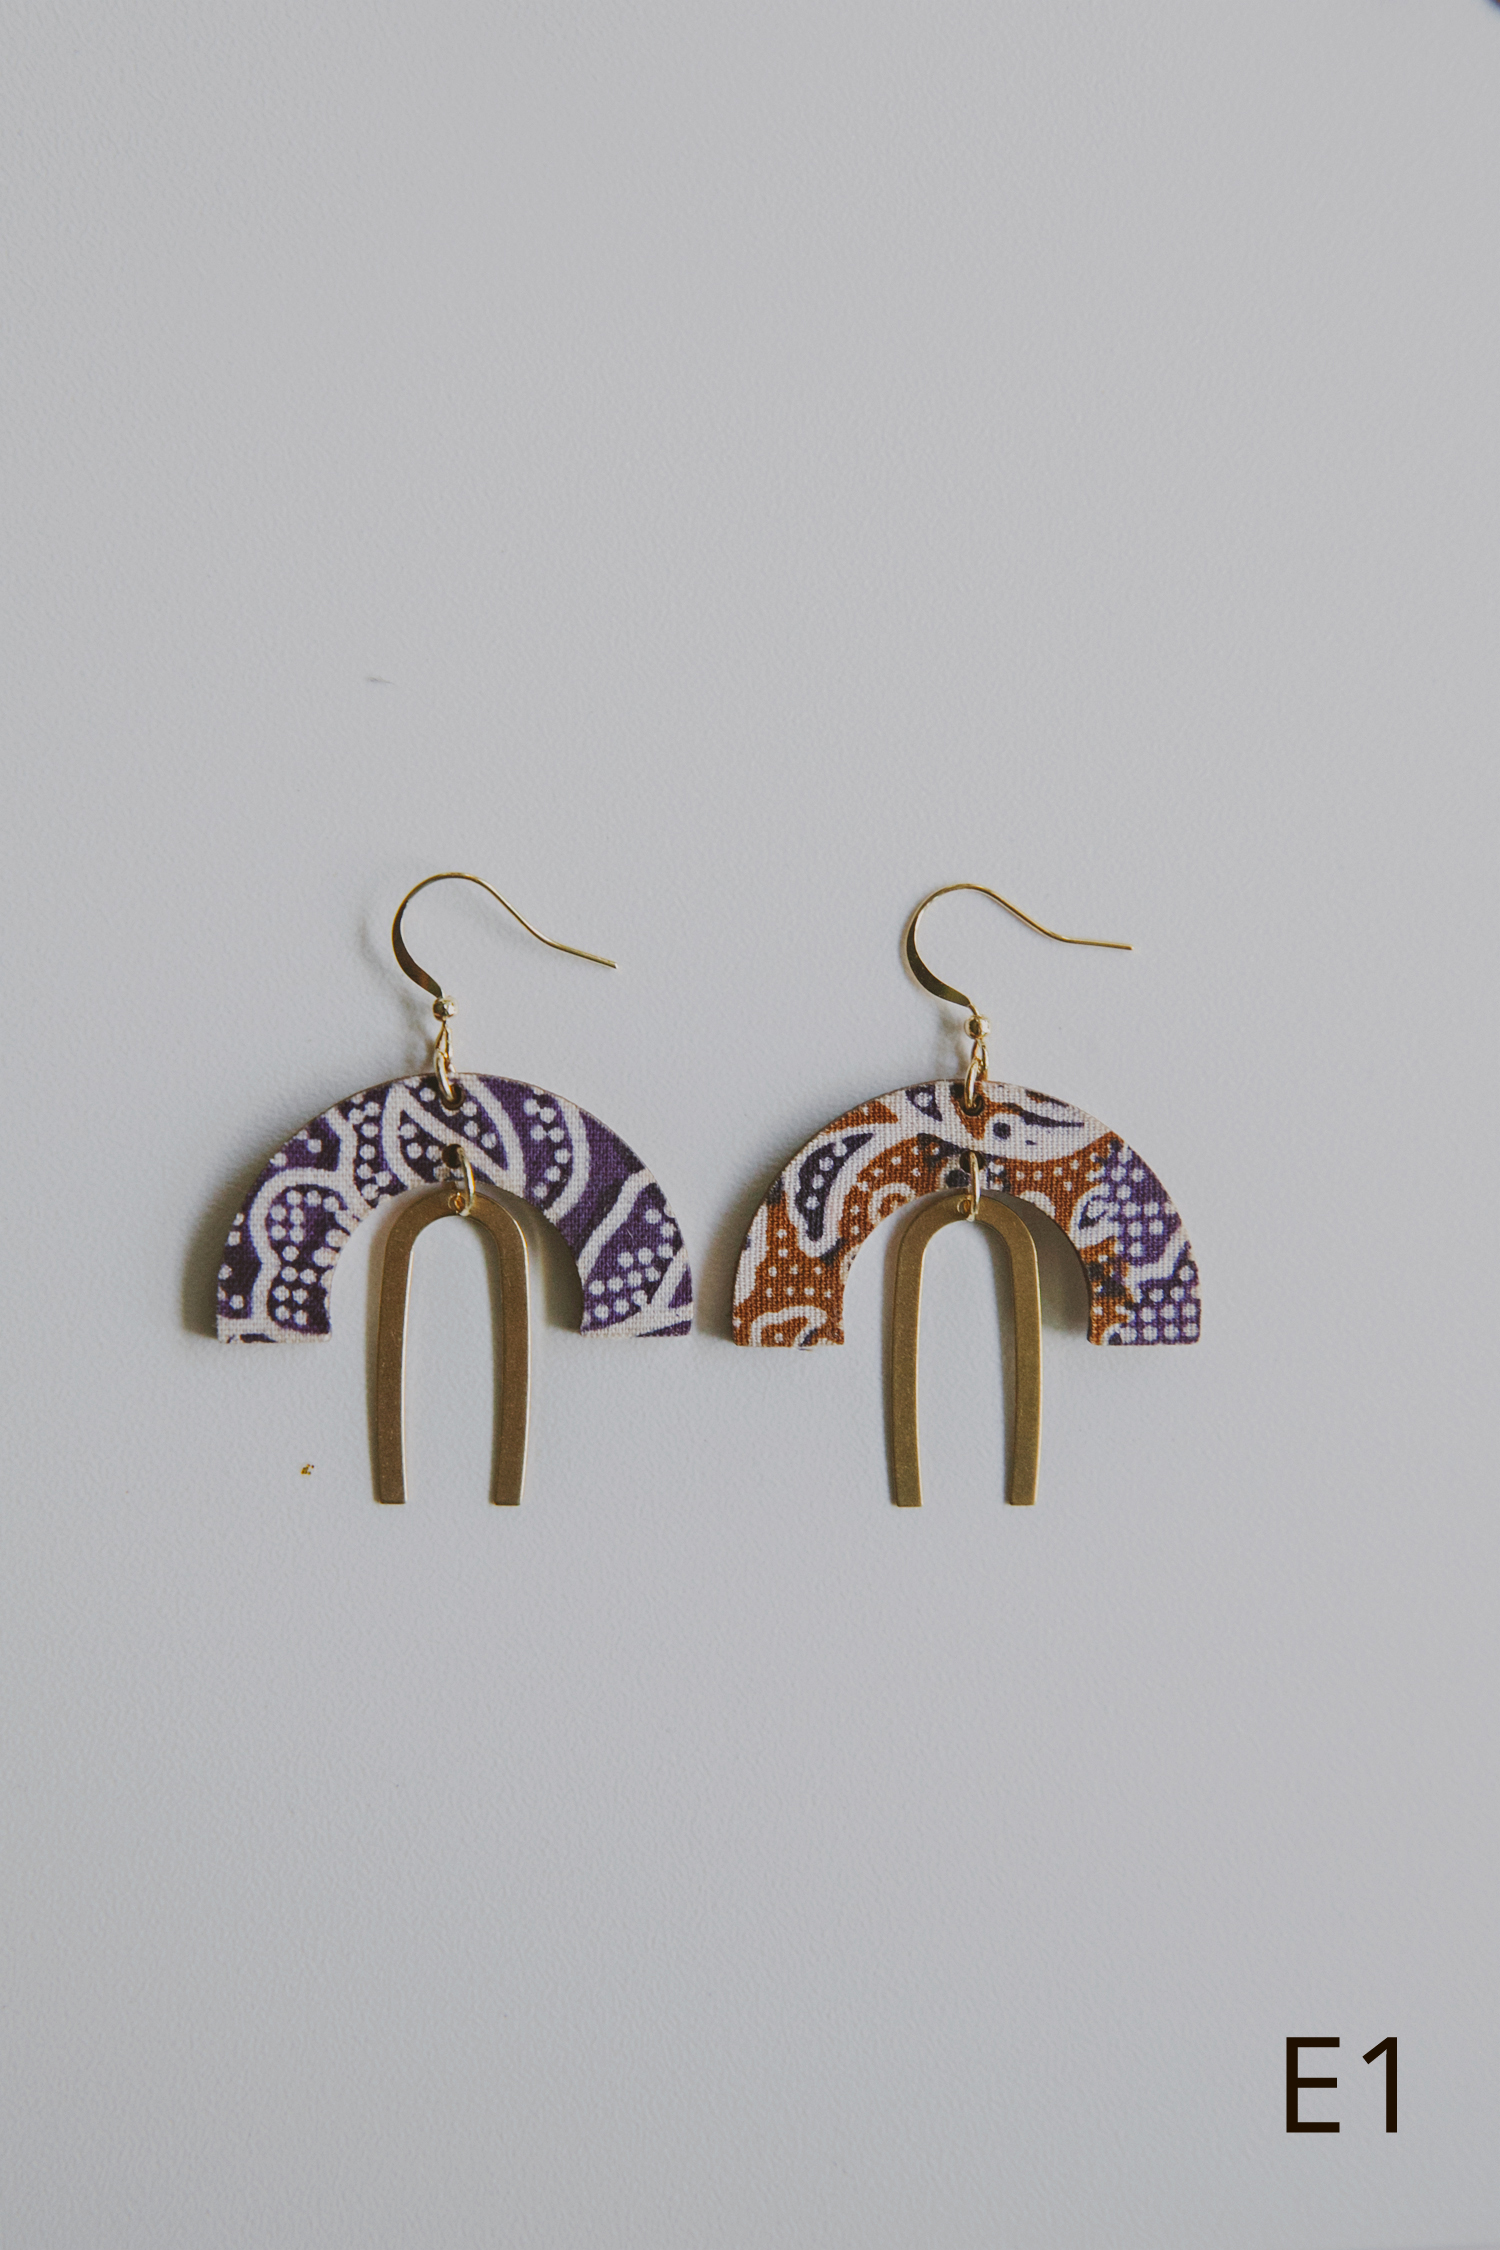 Niah+Co Batik Wooden Earrings -E1.jpg